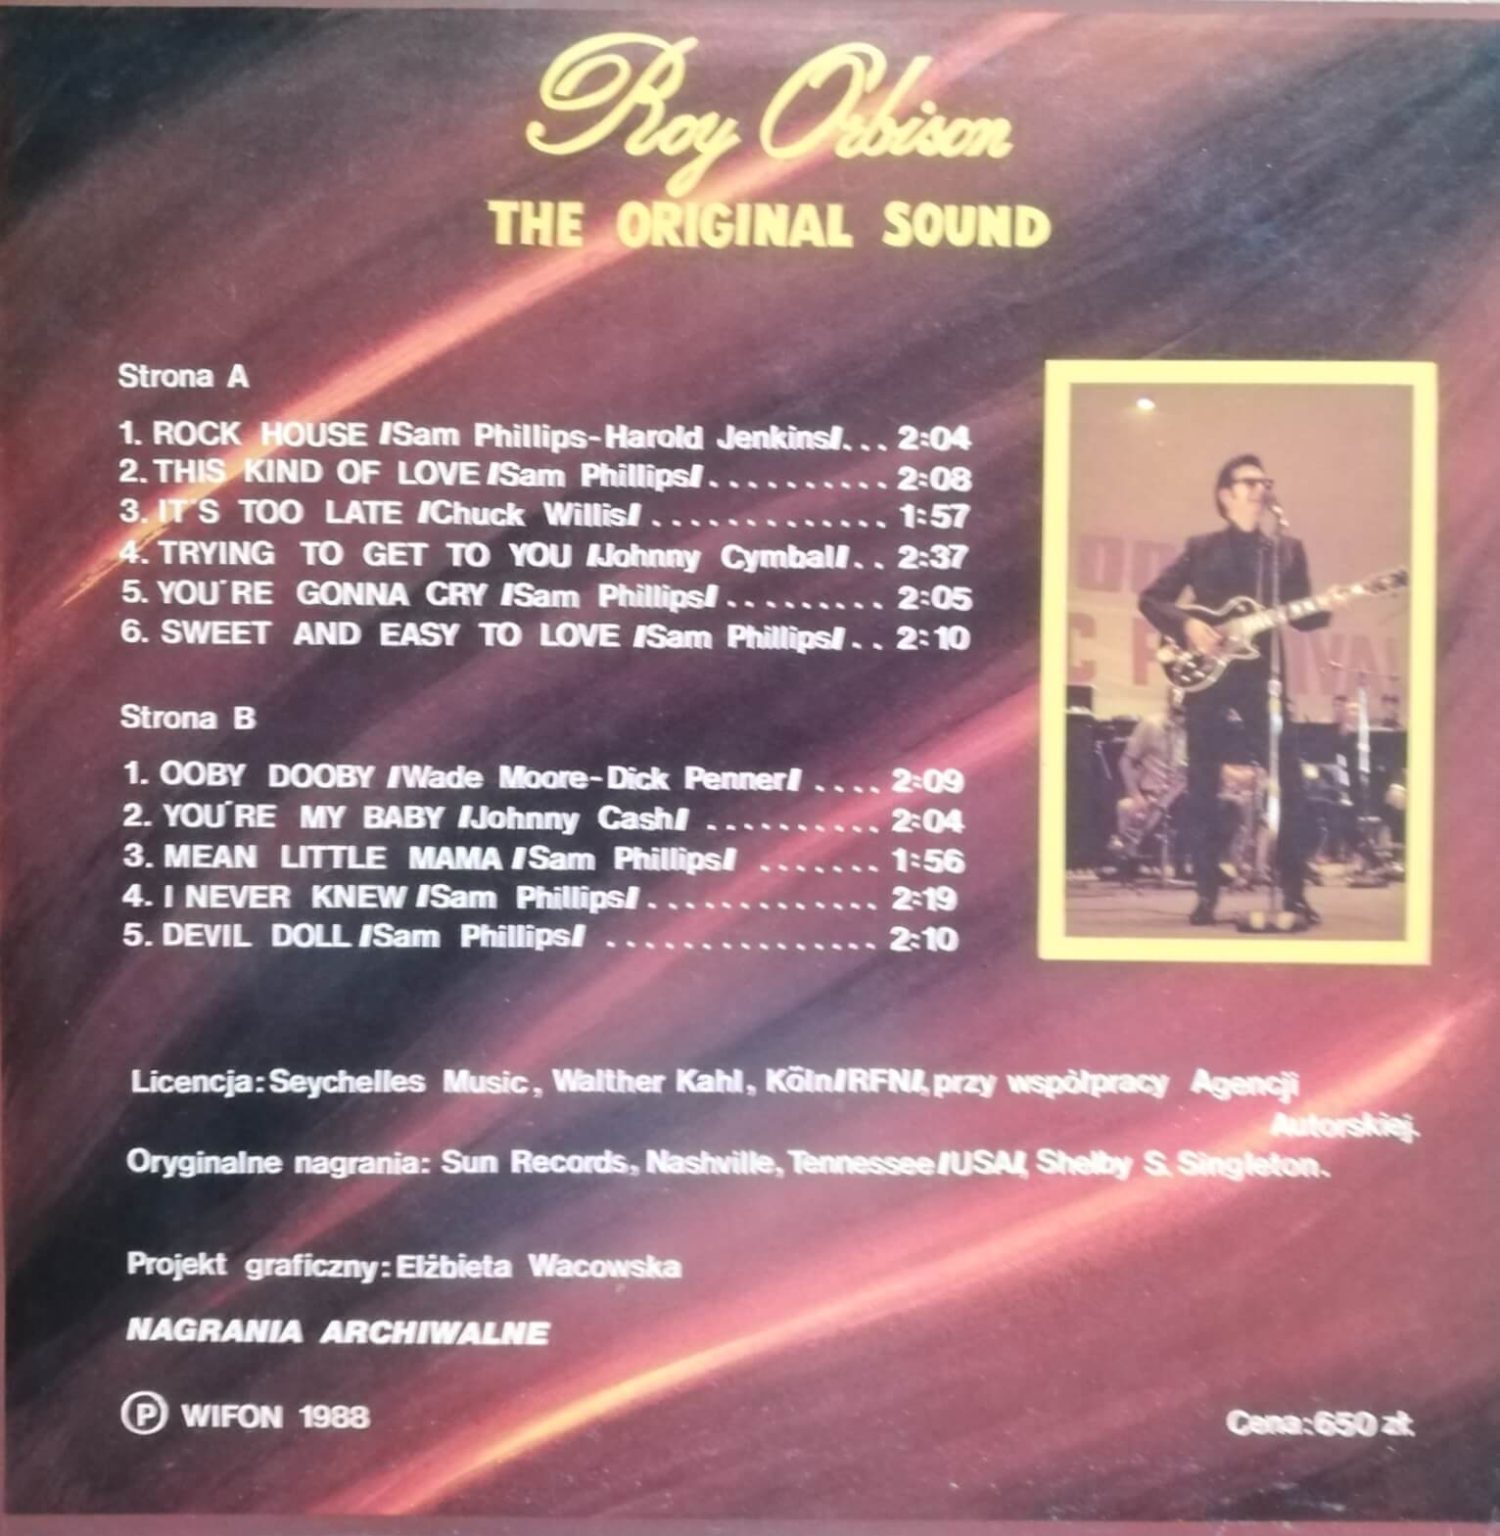 Okładka płyty winylowej artysty Roy Orbison o tytule The Original Sound